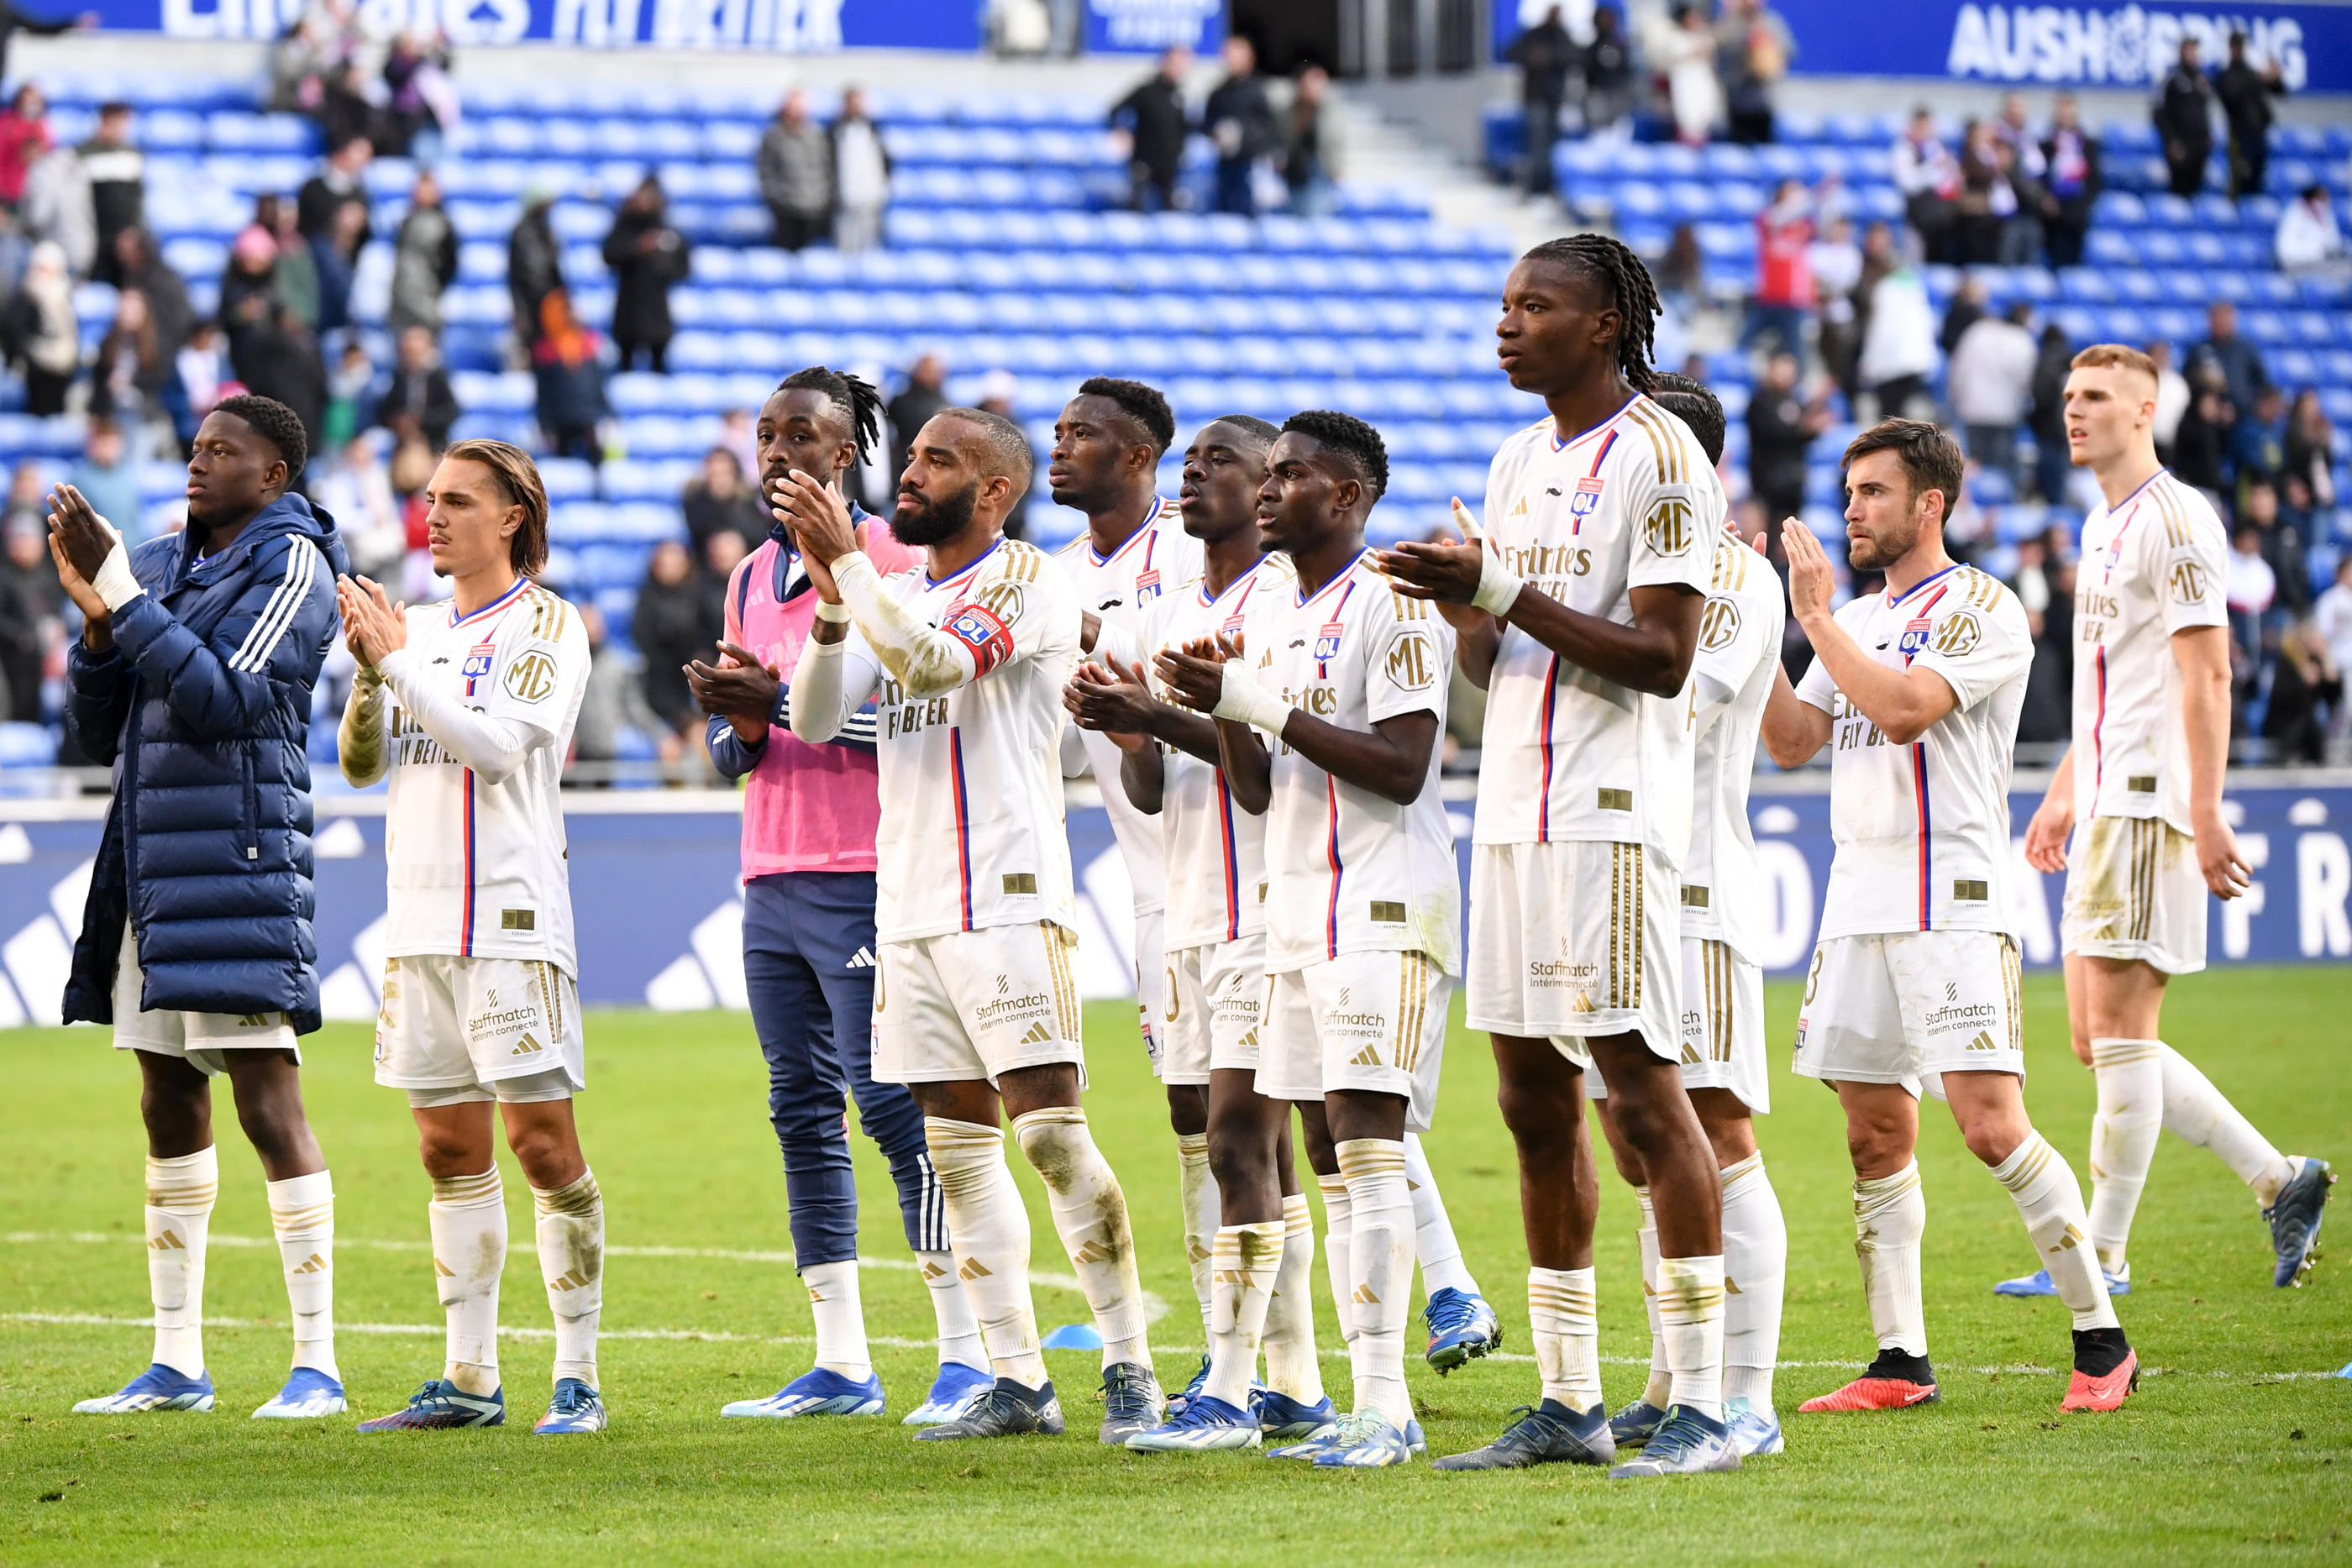 L'objectif est clair pour l'Olympique Lyonnais : retrouver la victoire devant leurs supporters au Groupama Stadium. Photo Icon Sport